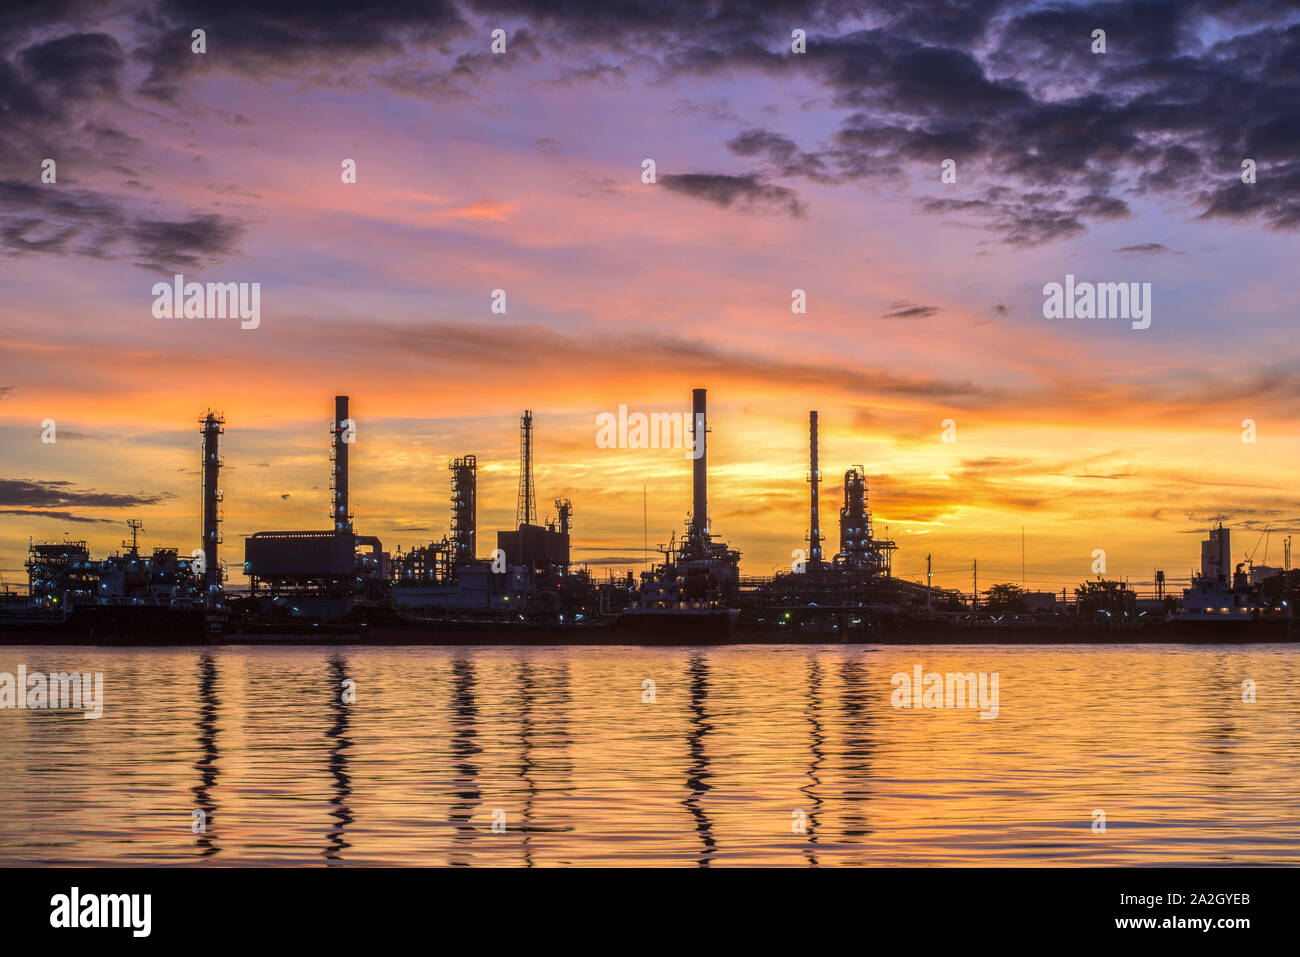 La refinería de petróleo y gas en la penumbra - fábrica petroquímica Foto de stock